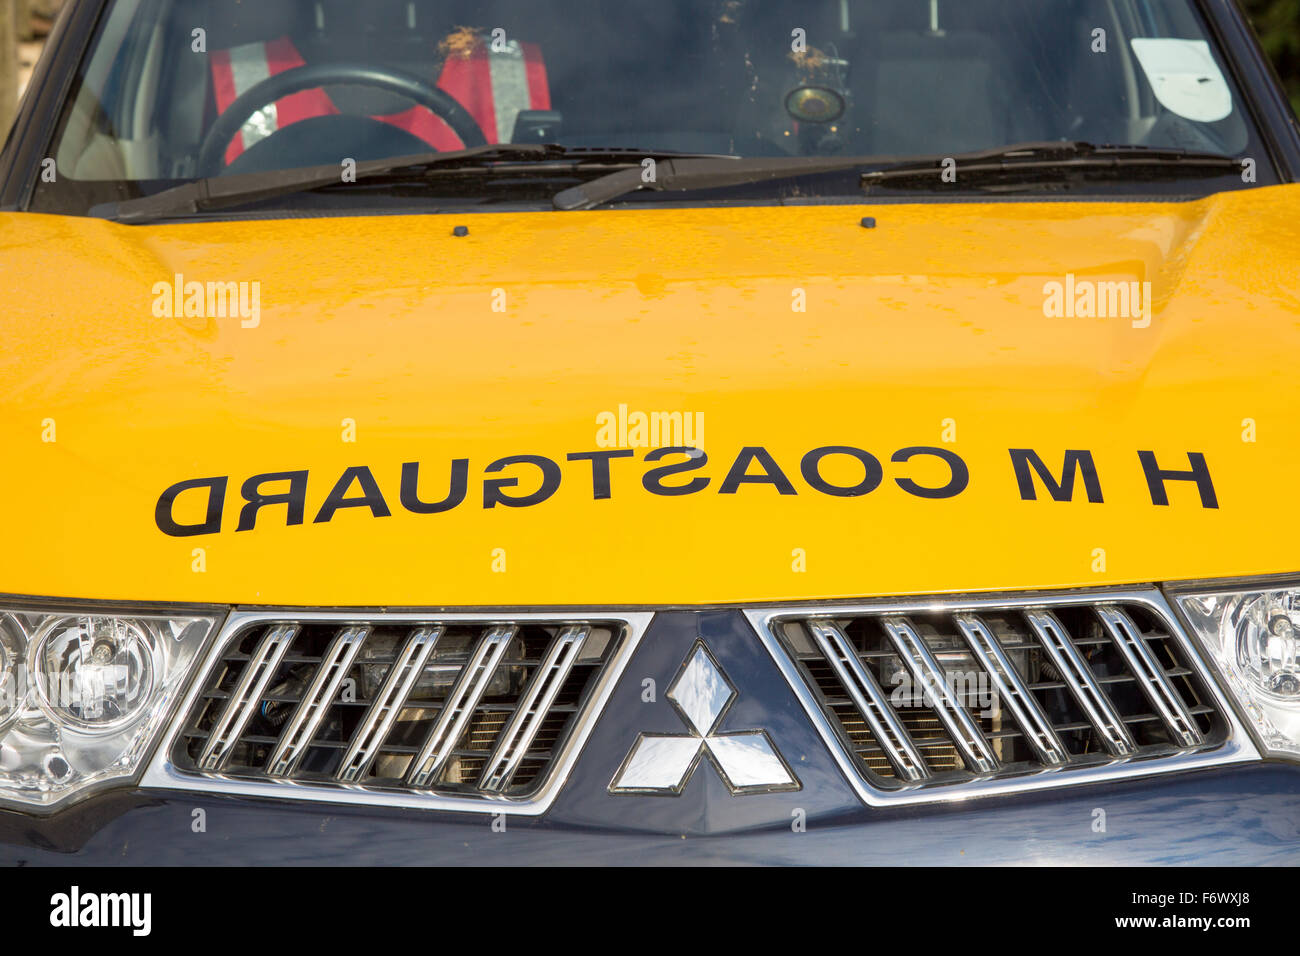 Küstenwache Schild mit Spiegelschrift auf Motorhaube des Fahrzeugs, England, UK Stockfoto